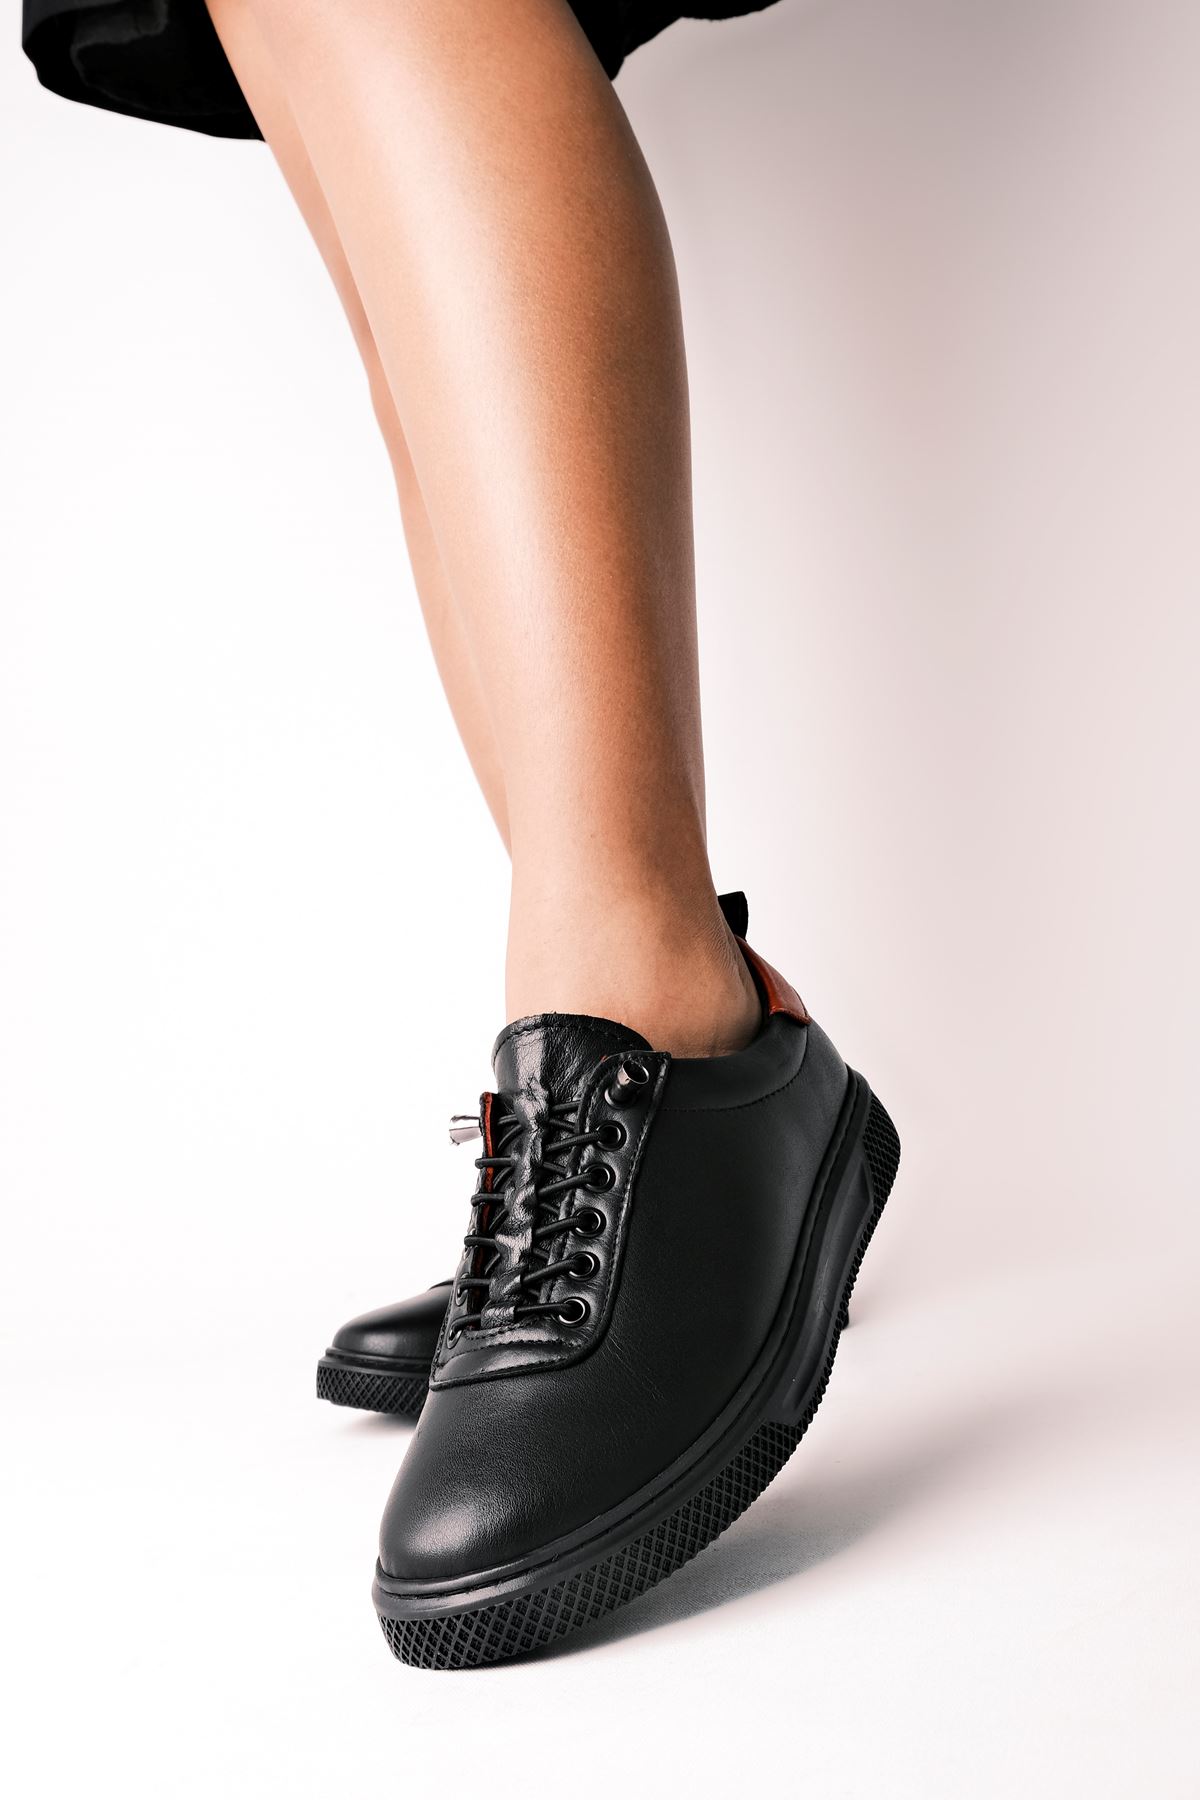 Riga Kadın Hakiki Deri Bağcıklı Spor Ayakkabı-siyah